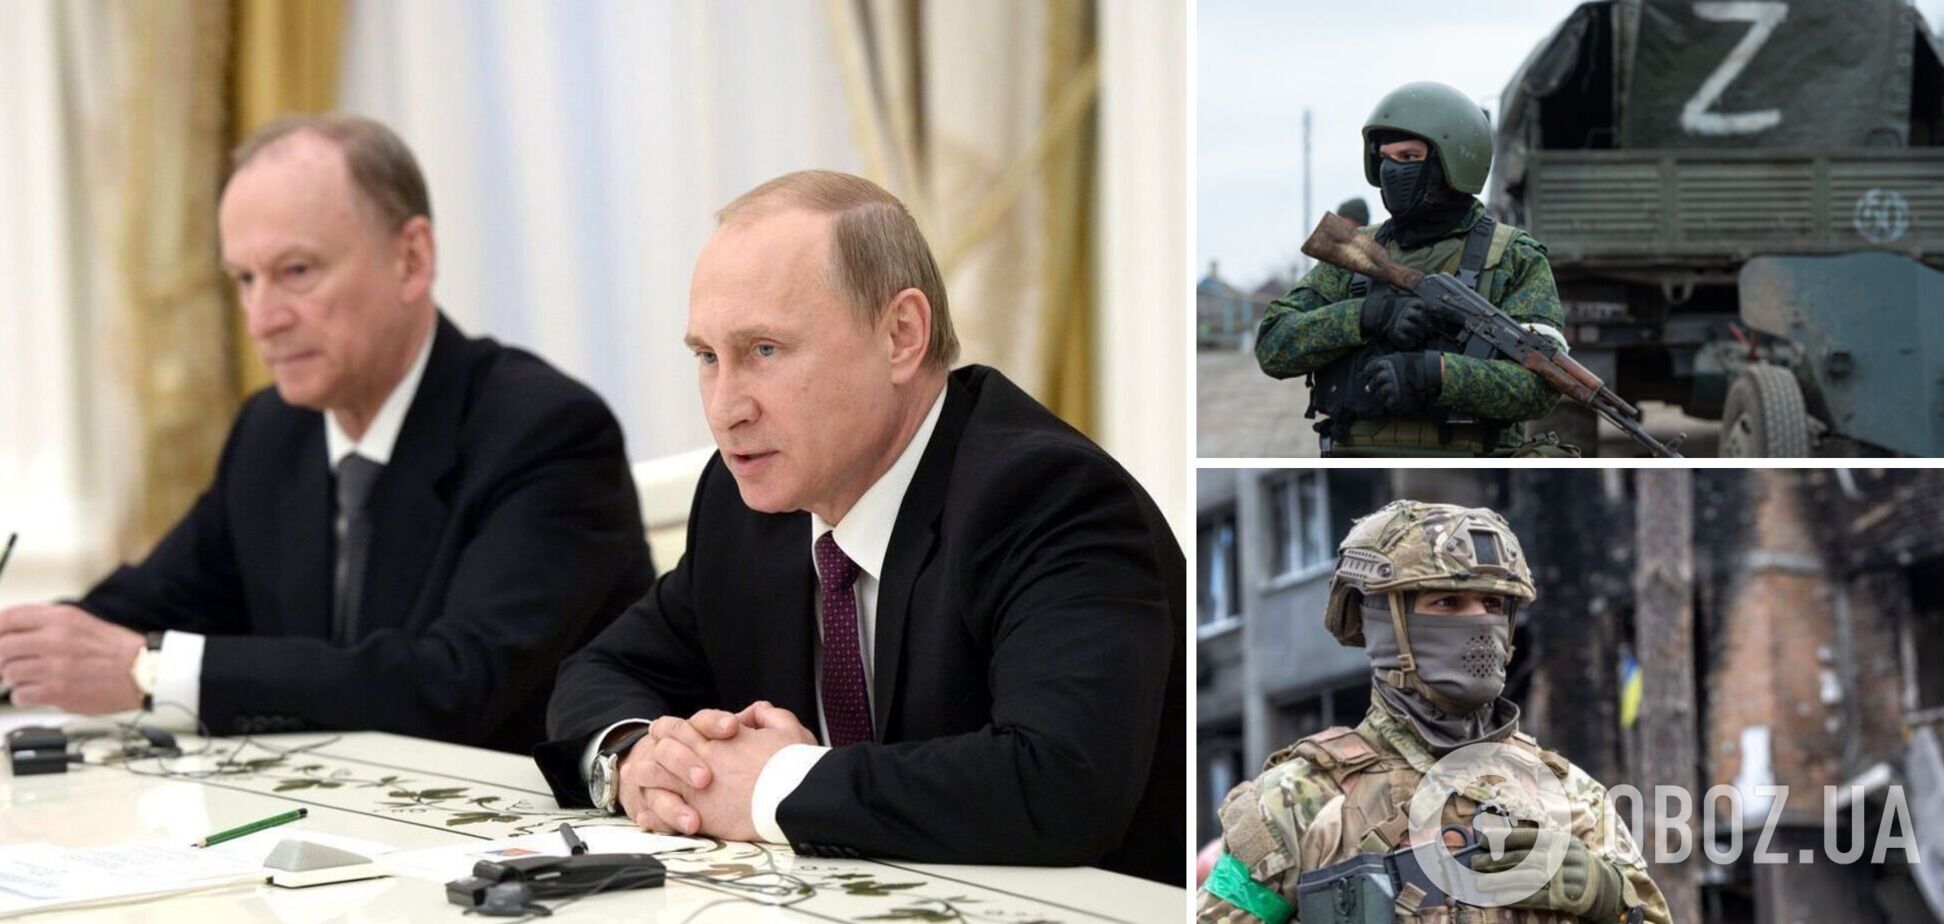 Между КГБ, Кадыровым с Пригожиным и армией. Что скоро произойдет в России